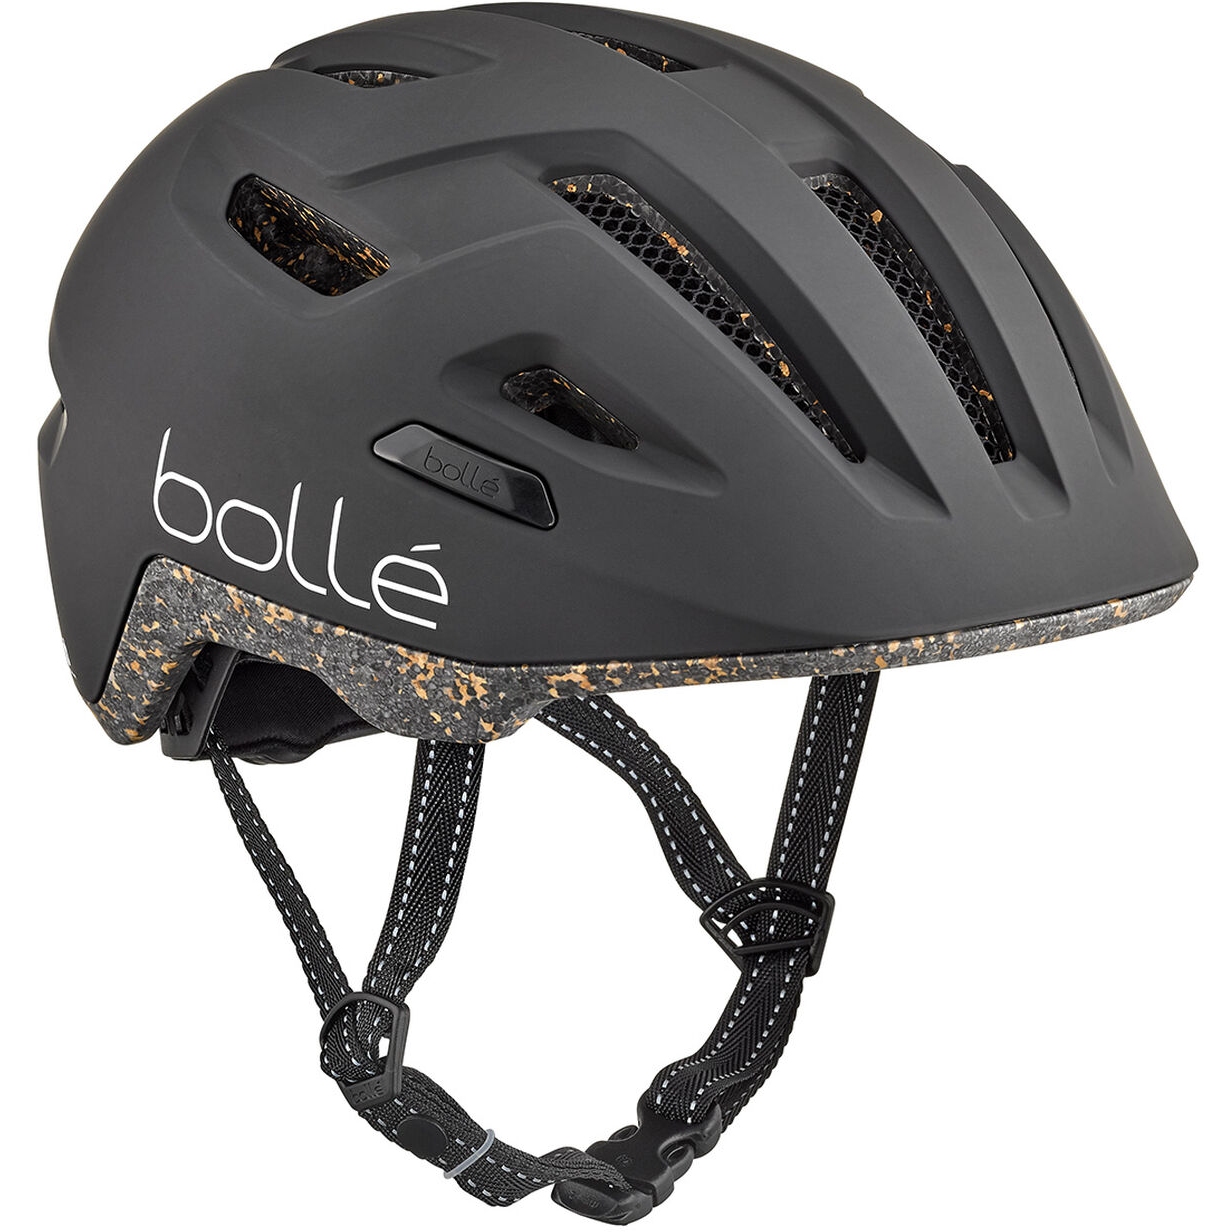 Productfoto van Bollé Eco Stance Helm - black matte